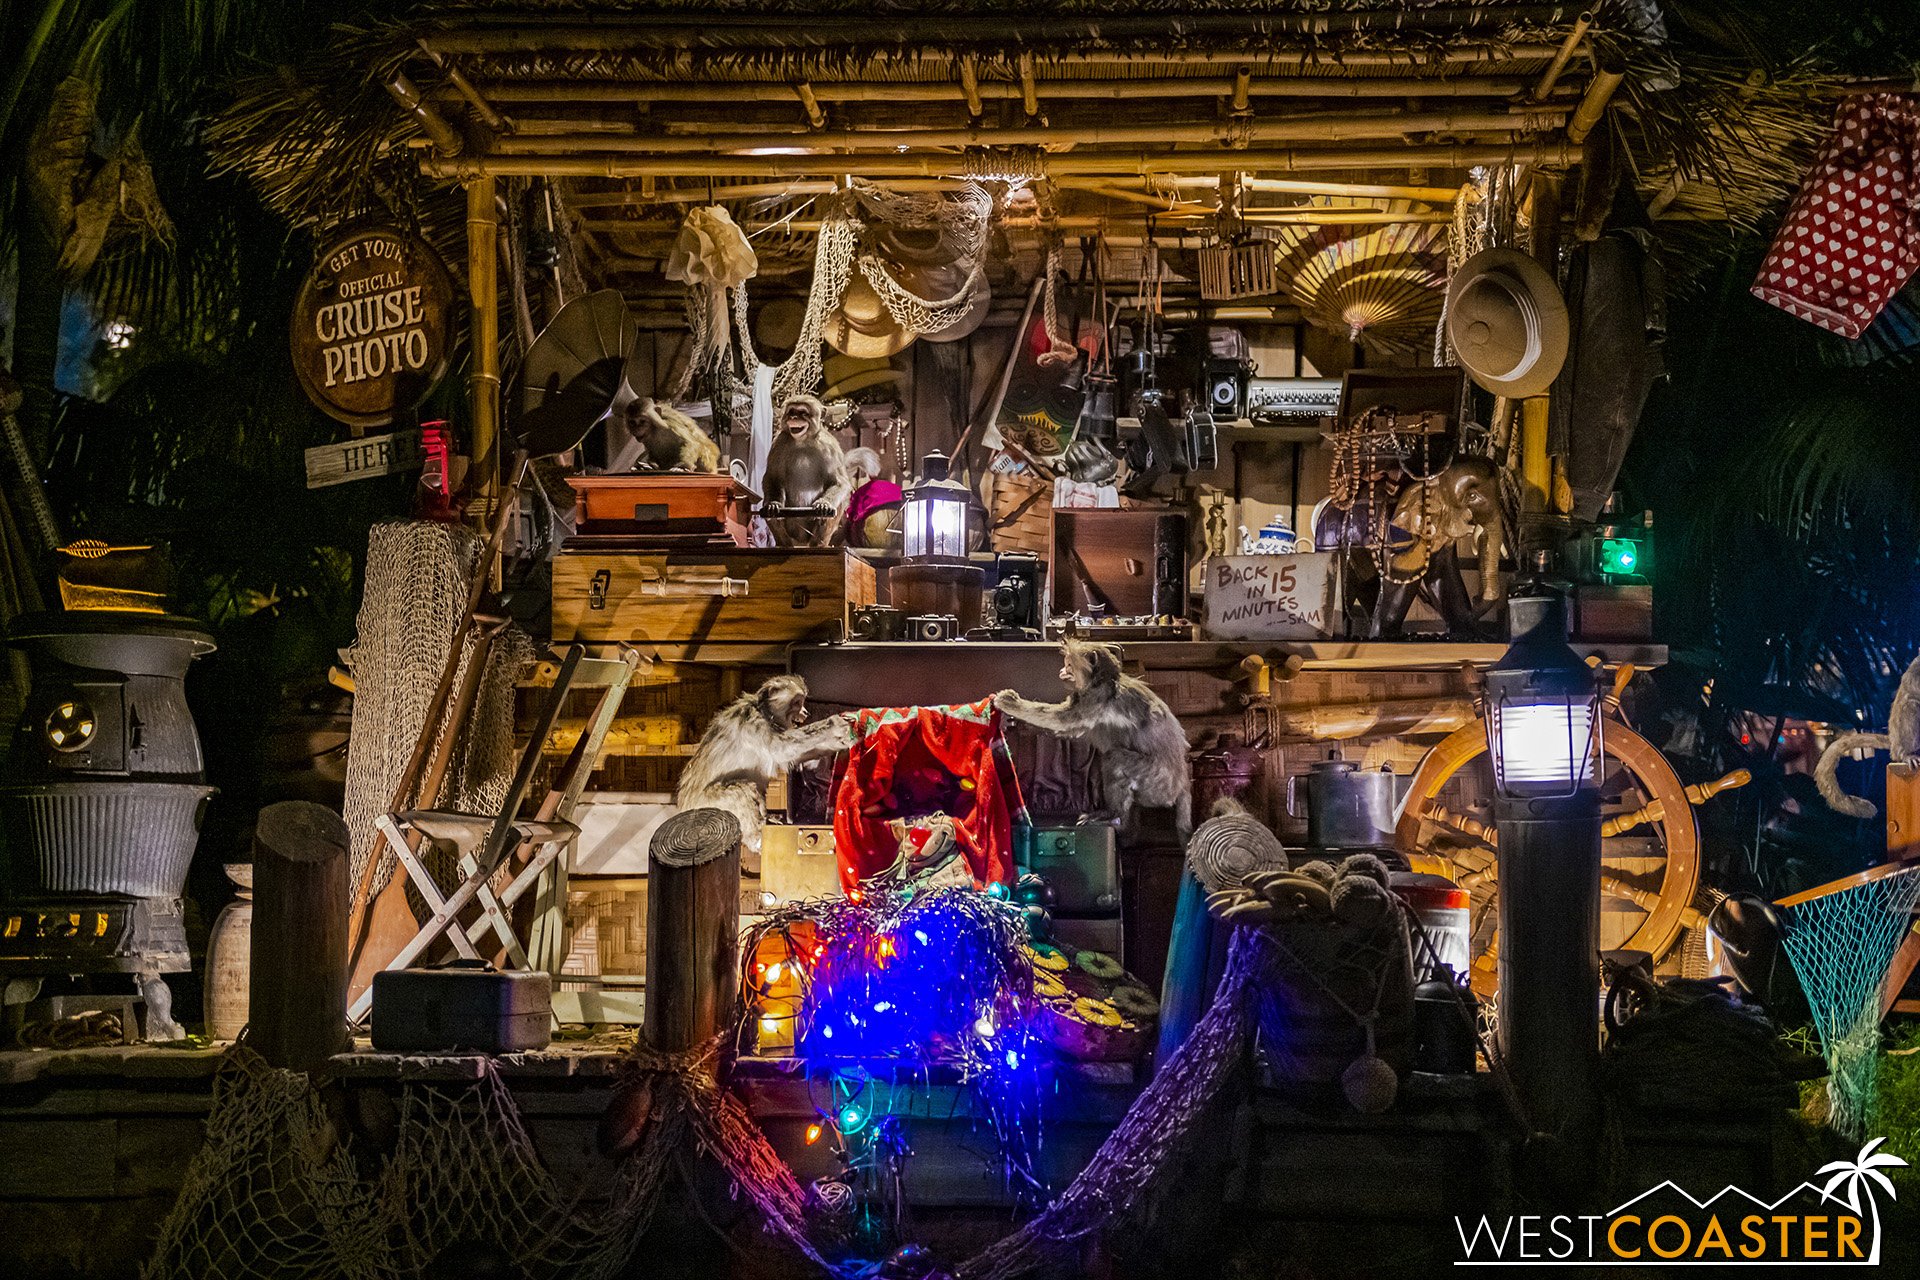  Trader Sam’s hut at night. 